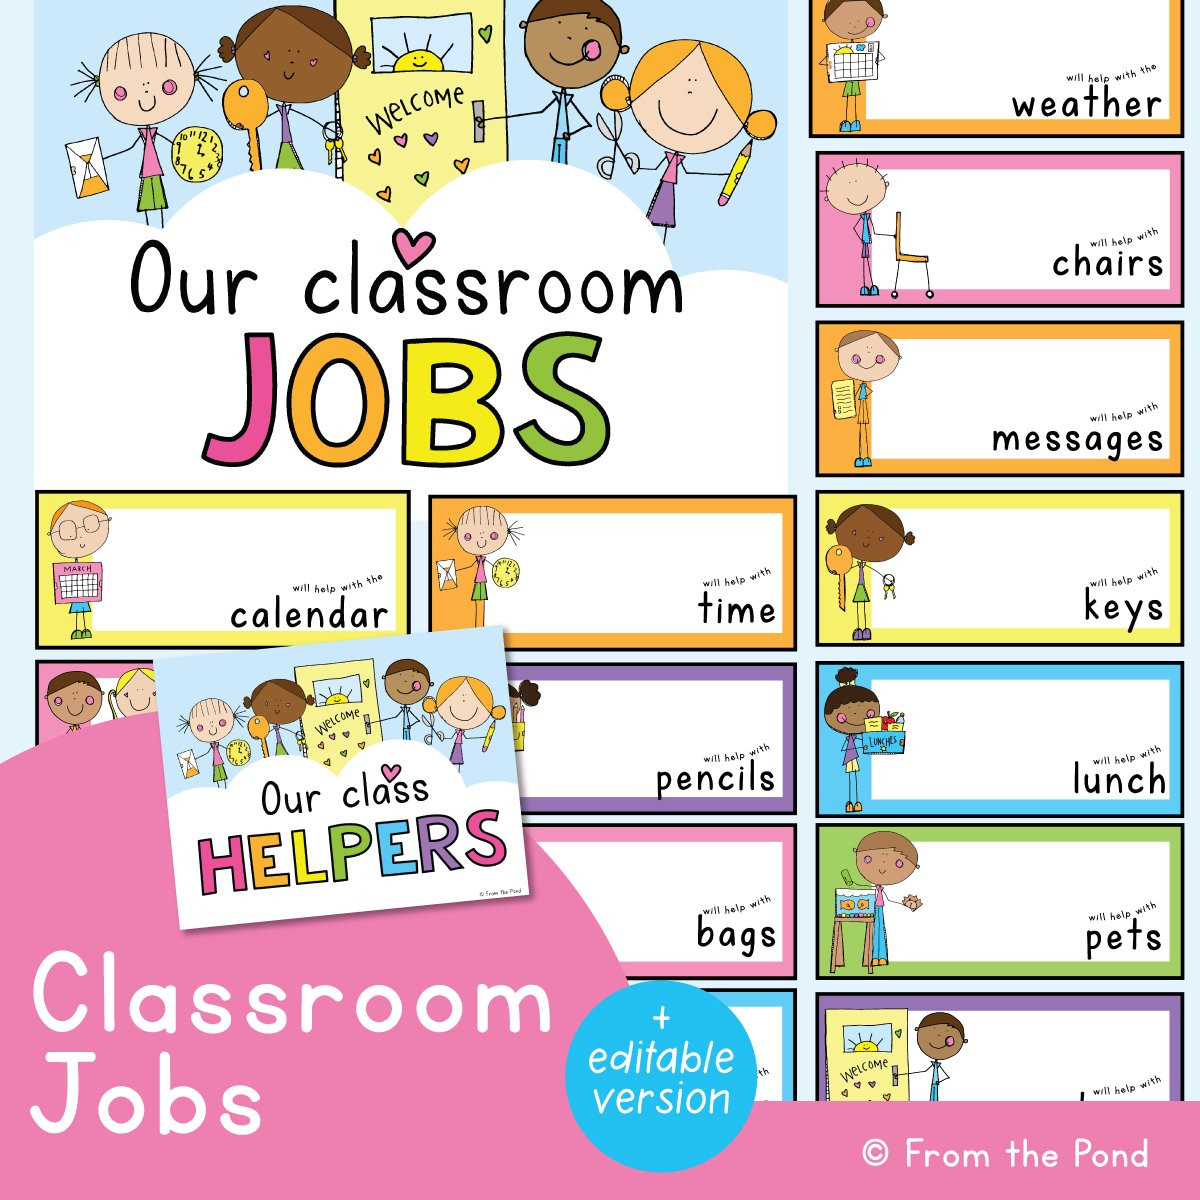 Classroom Jobs Display